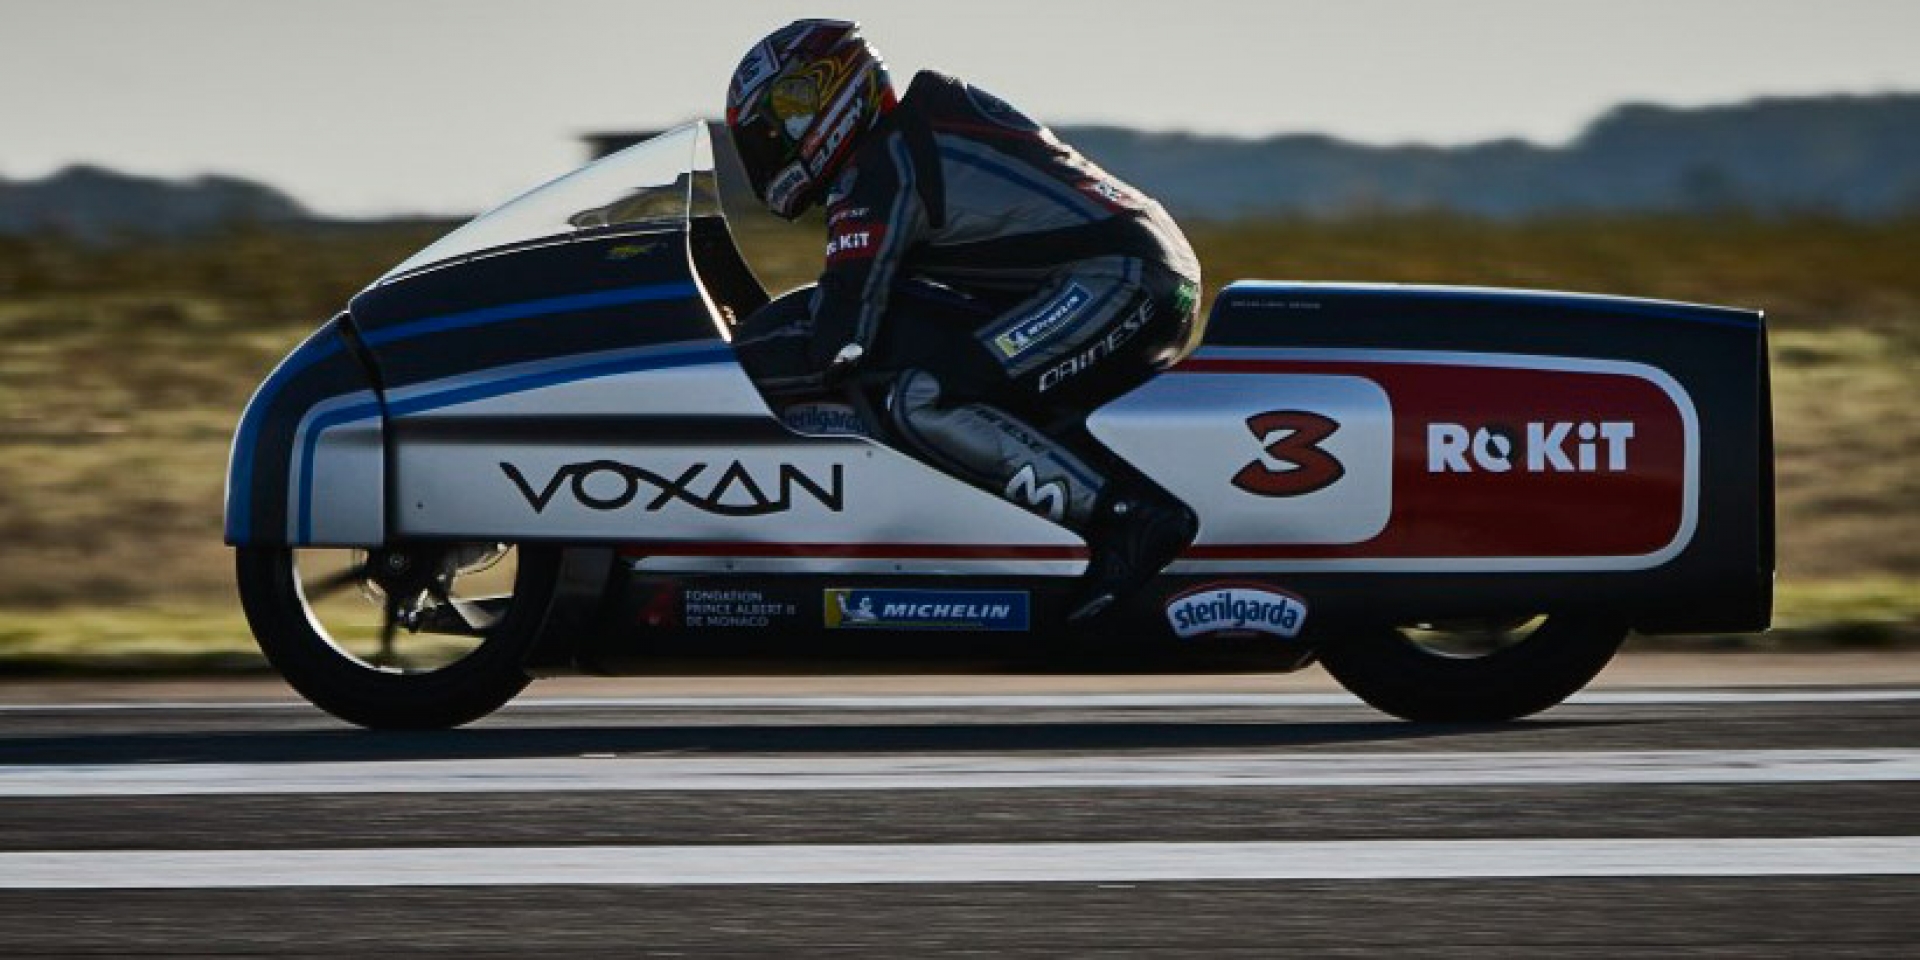 電動機車極速紀錄，Max Biaggi與Voxan Wattman創下366.941 km/h驚人表現！